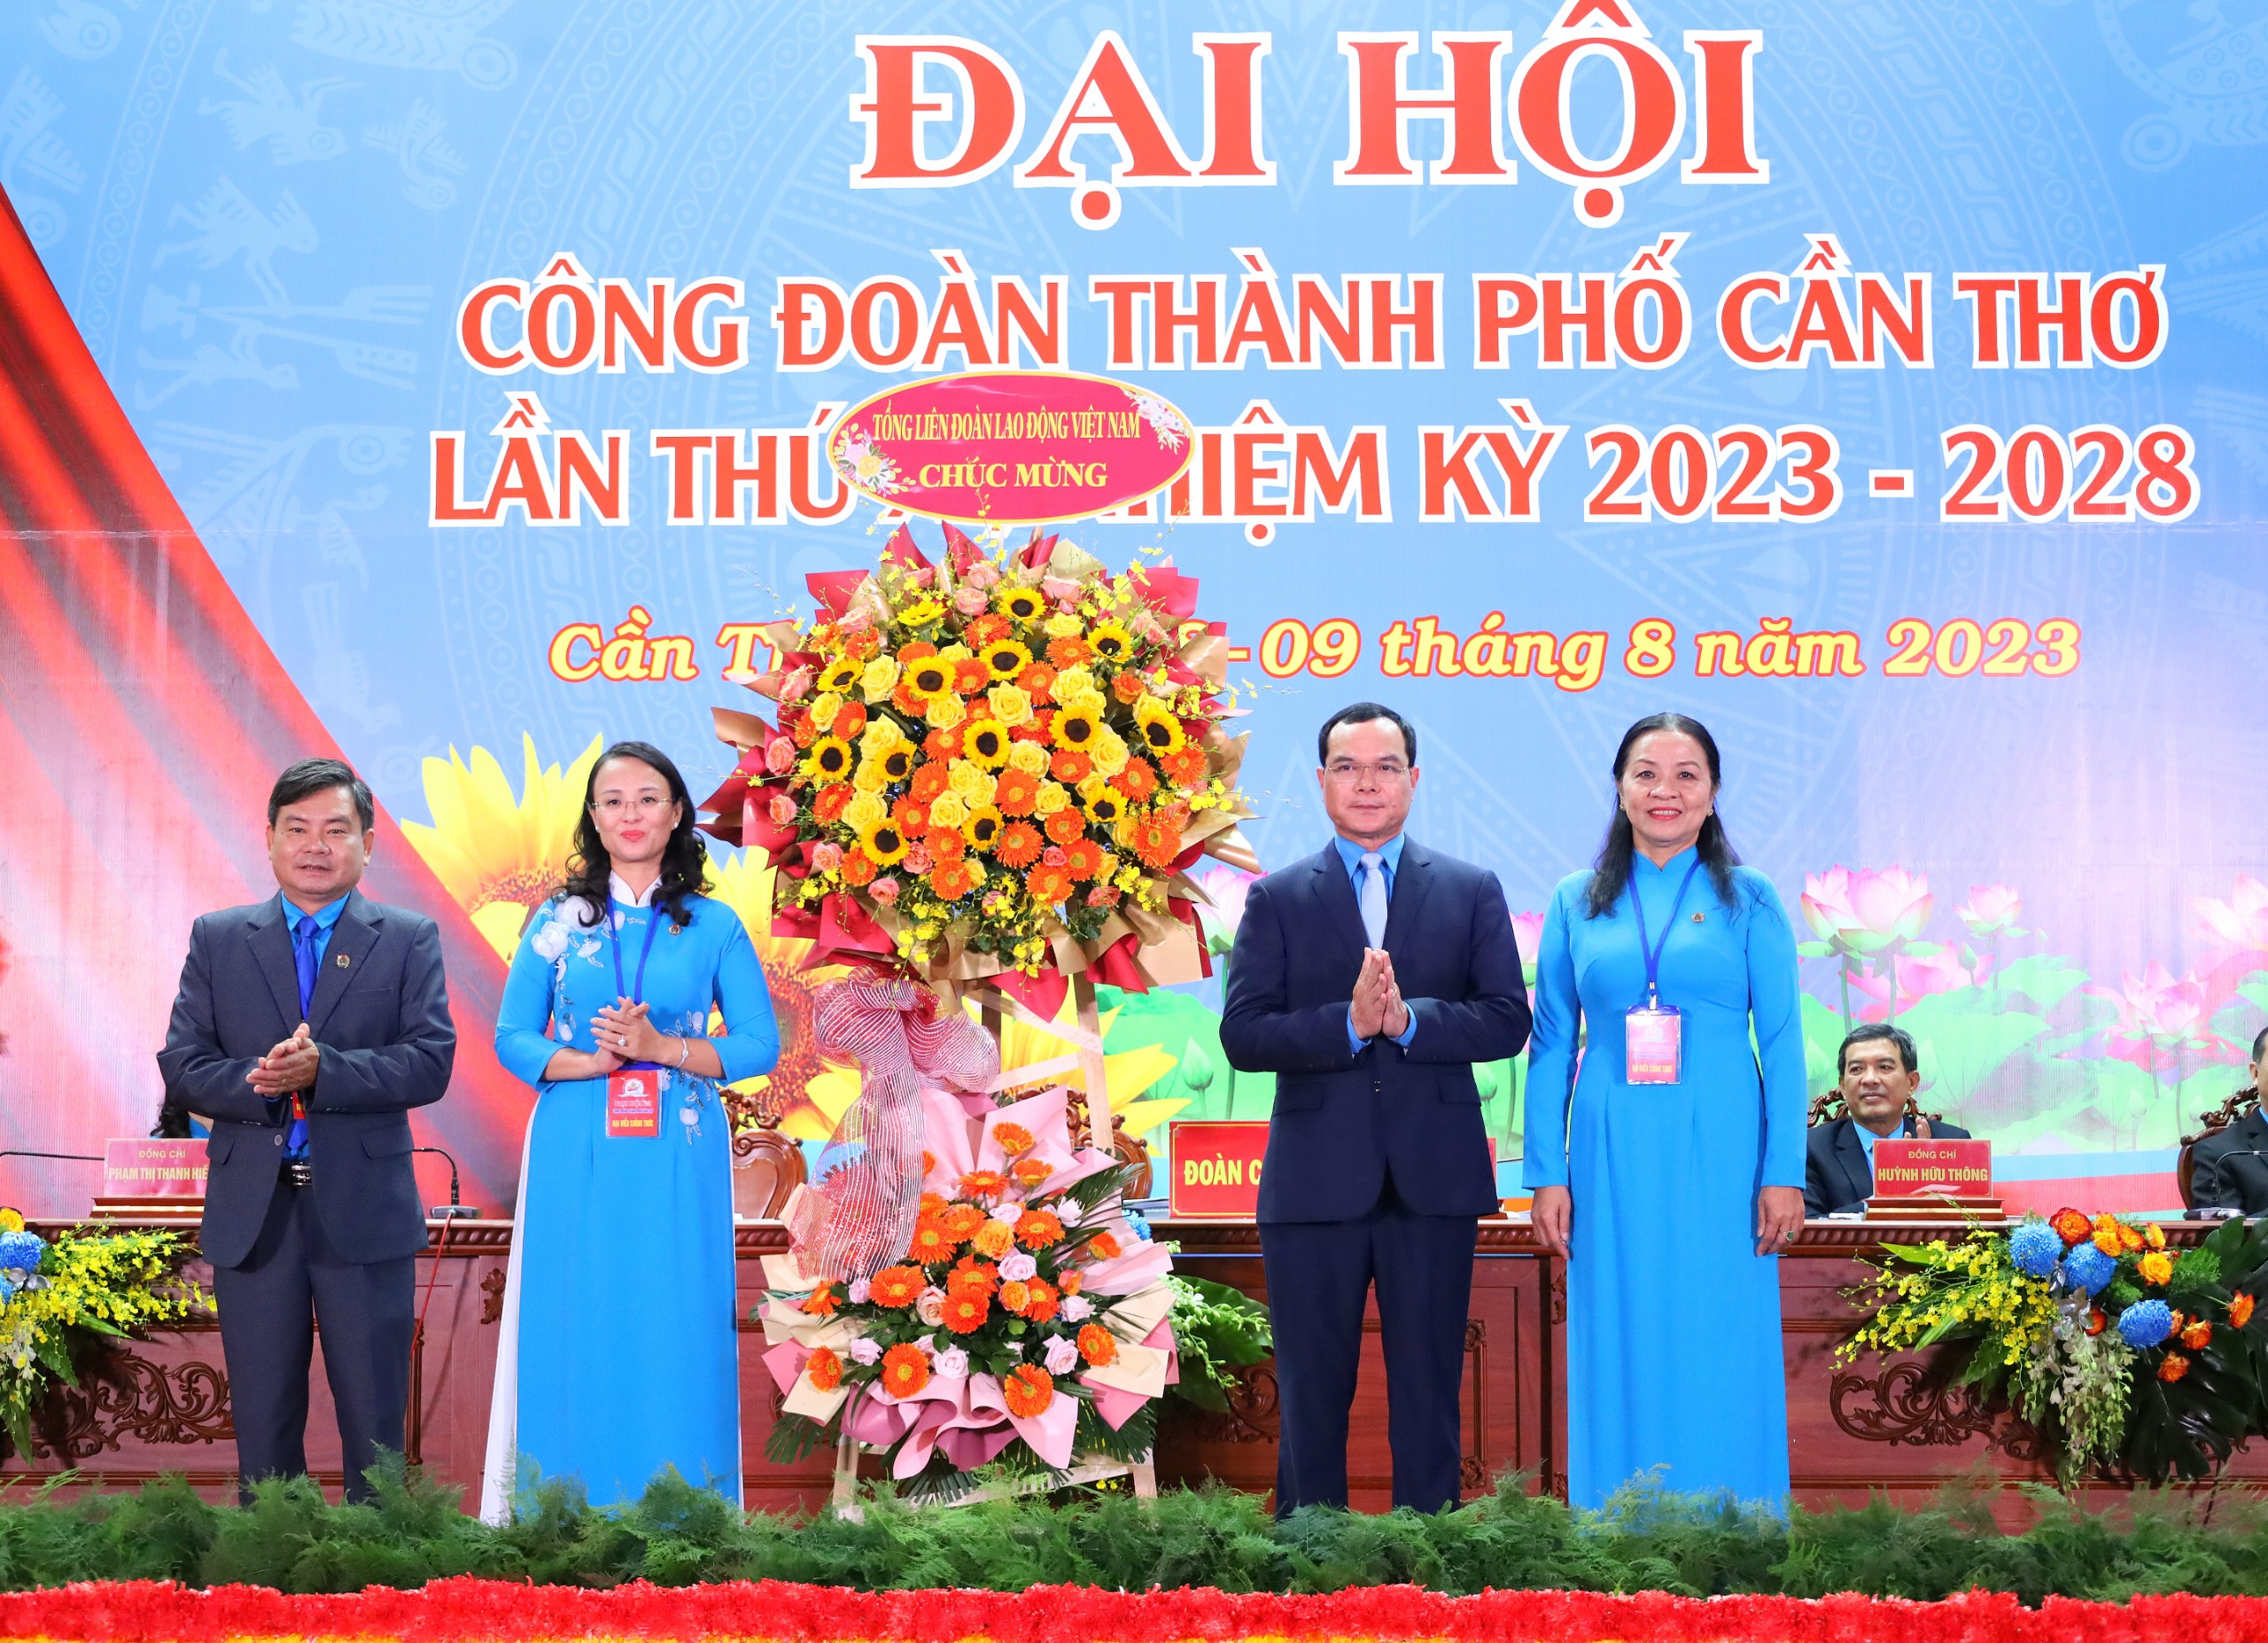 Ông Nguyễn Đình Khang - Ủy viên BCH Trung ương Đảng, Chủ tịch Tổng Liên đoàn Lao động Việt Nam tặng hoa chúc mừng đại hội.